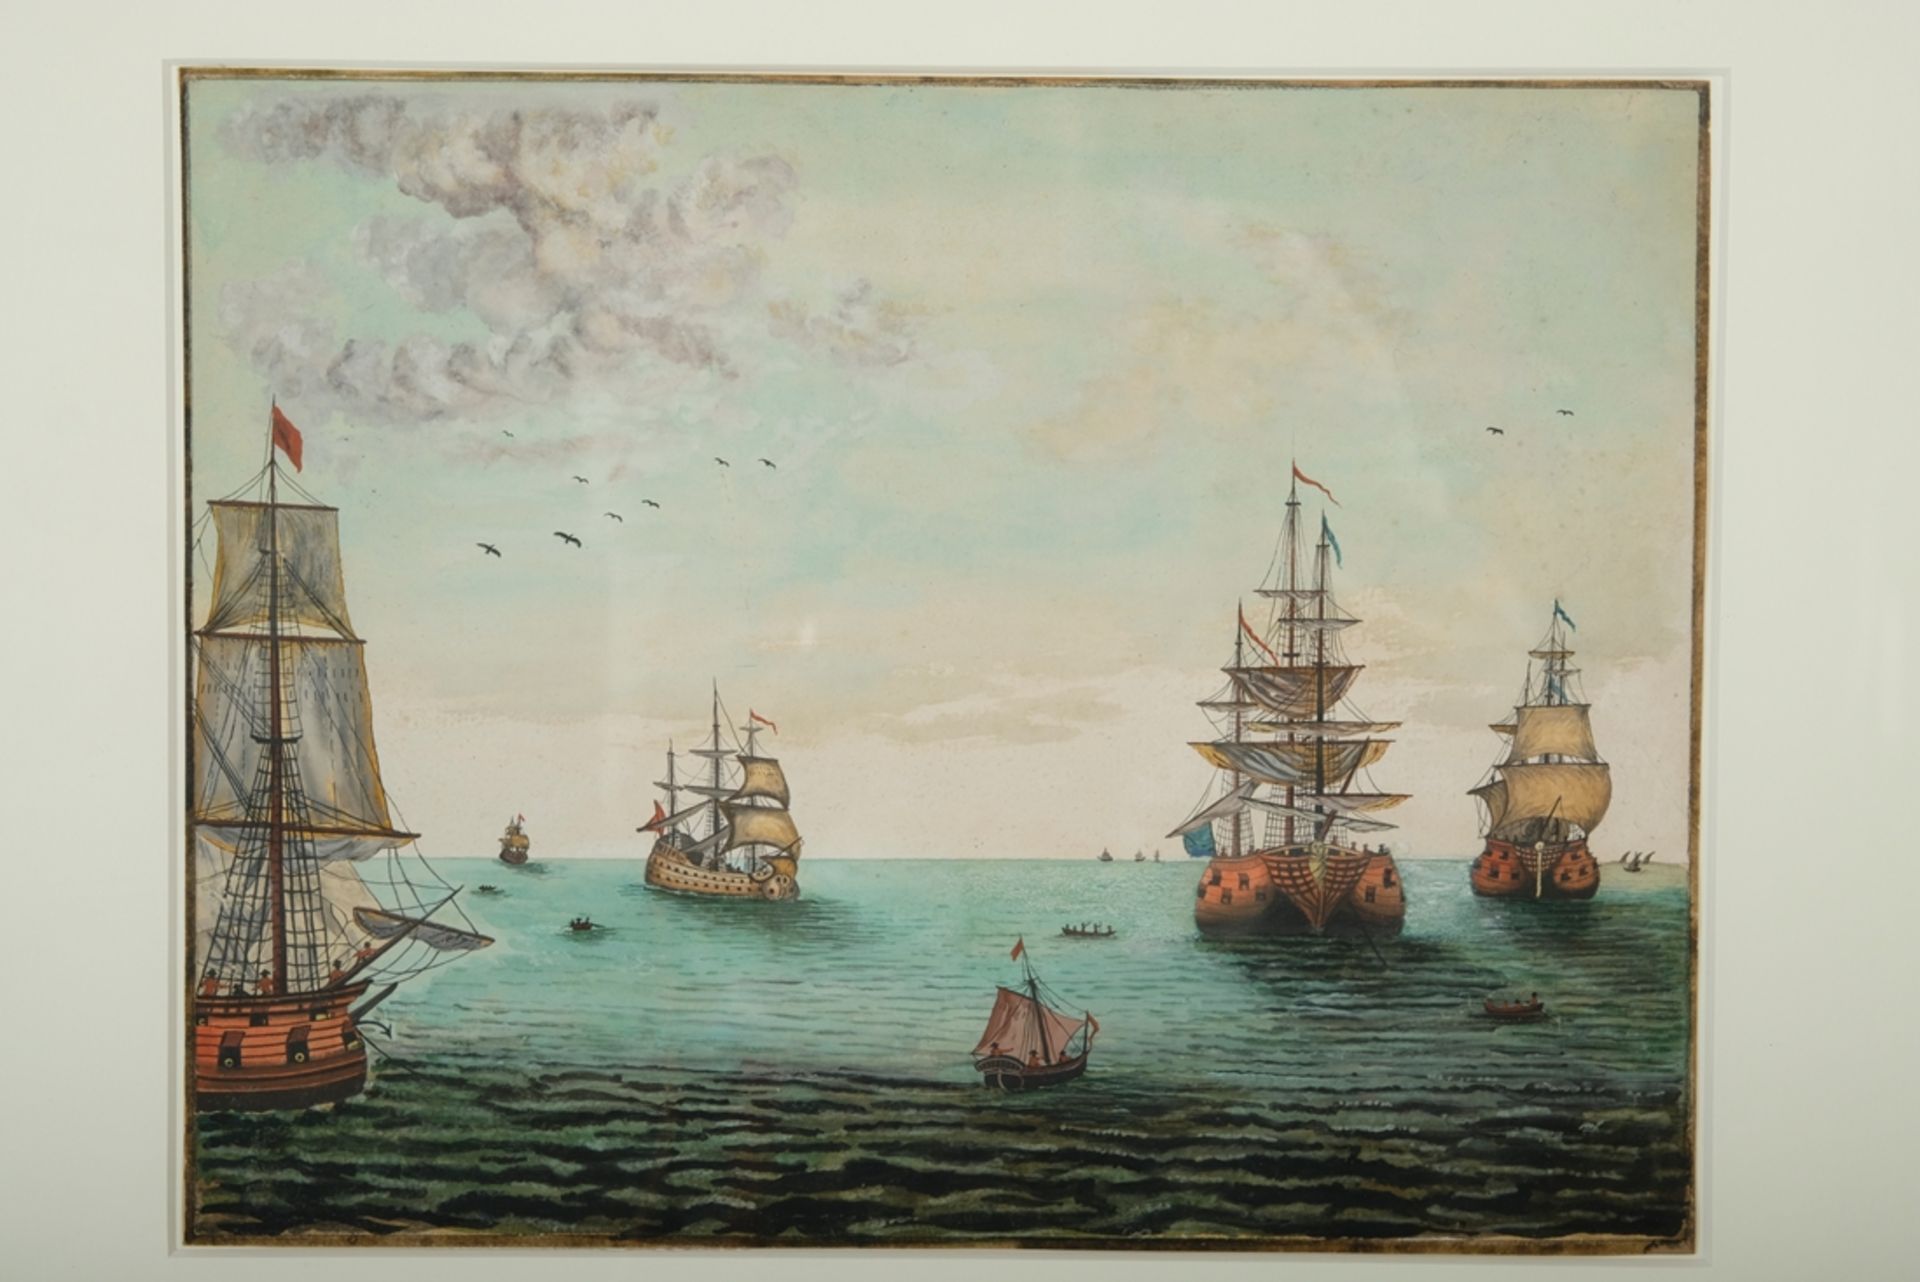 UNBEKANNT "Segelschiffe", auf hoher See, Tusche über Aquarell auf Karton. Karton 25 x 32 cm, R 44 x